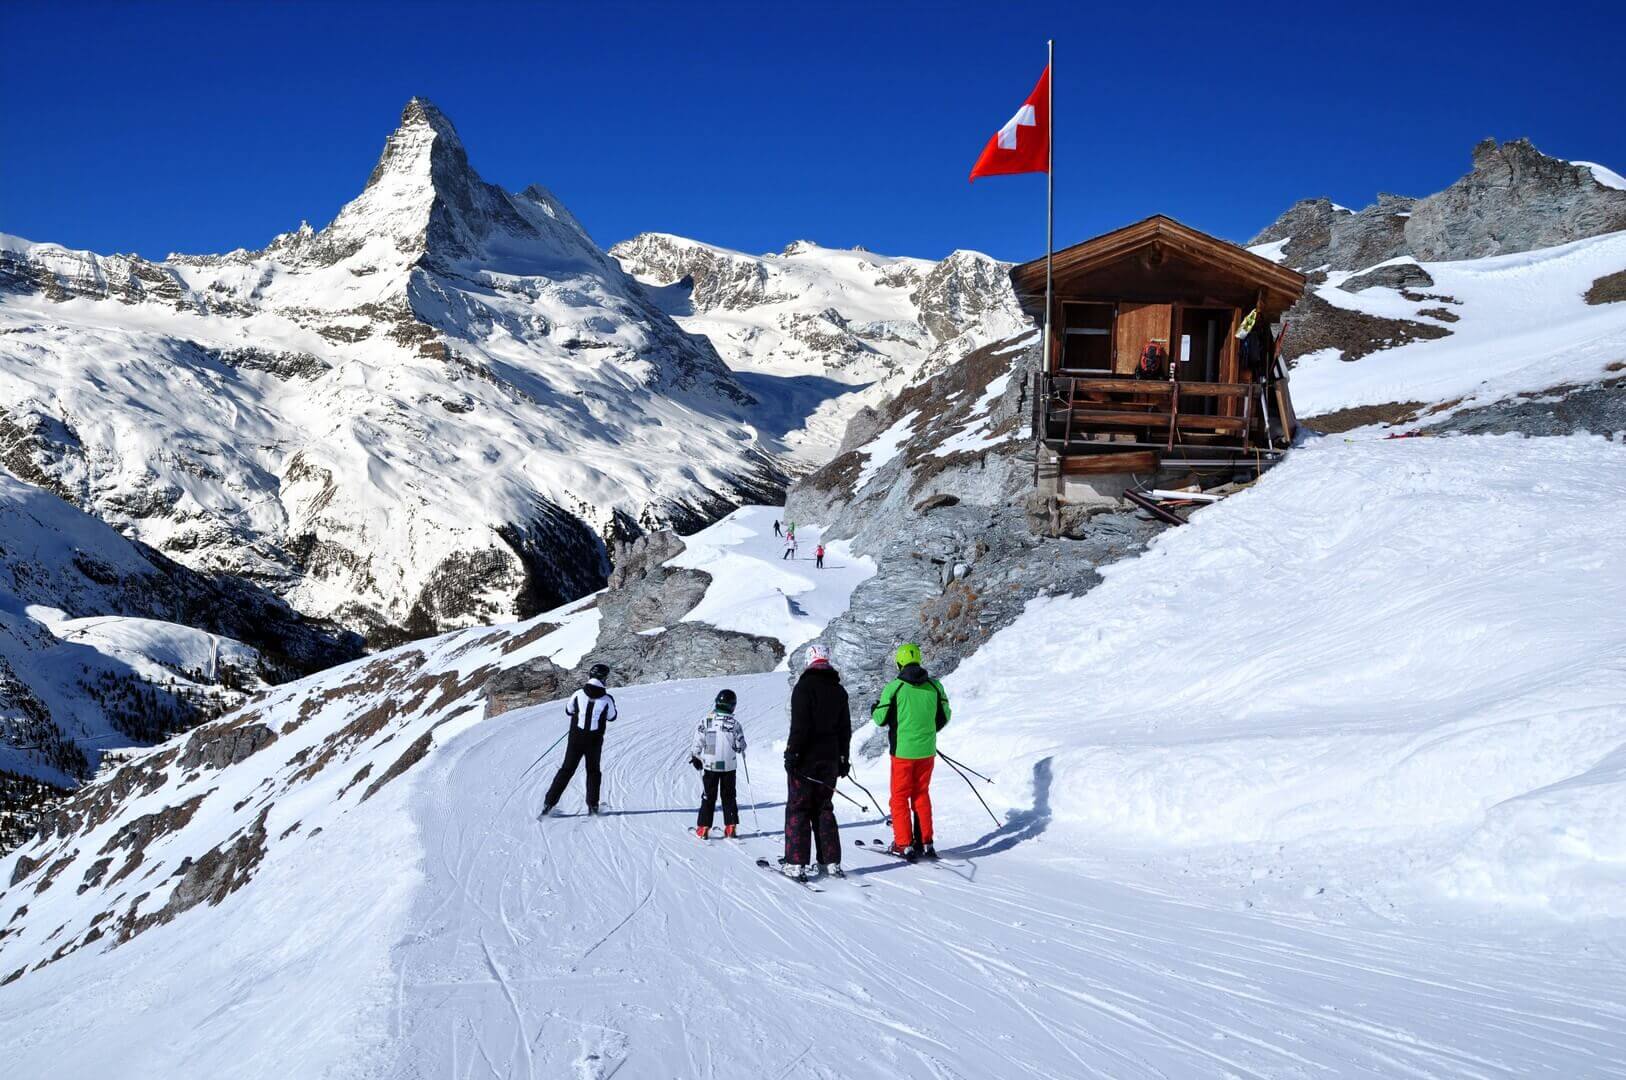 Skieurs sur le chemin de la piste de ski dans les Alpes suisses en journée ensoleillée, derrière le Cervin. Petite maison en bois avec drapeau suisse rouge à proximité de la piste de ski. Manipulation de photos de montagnes et de stations de ski, Suisse.